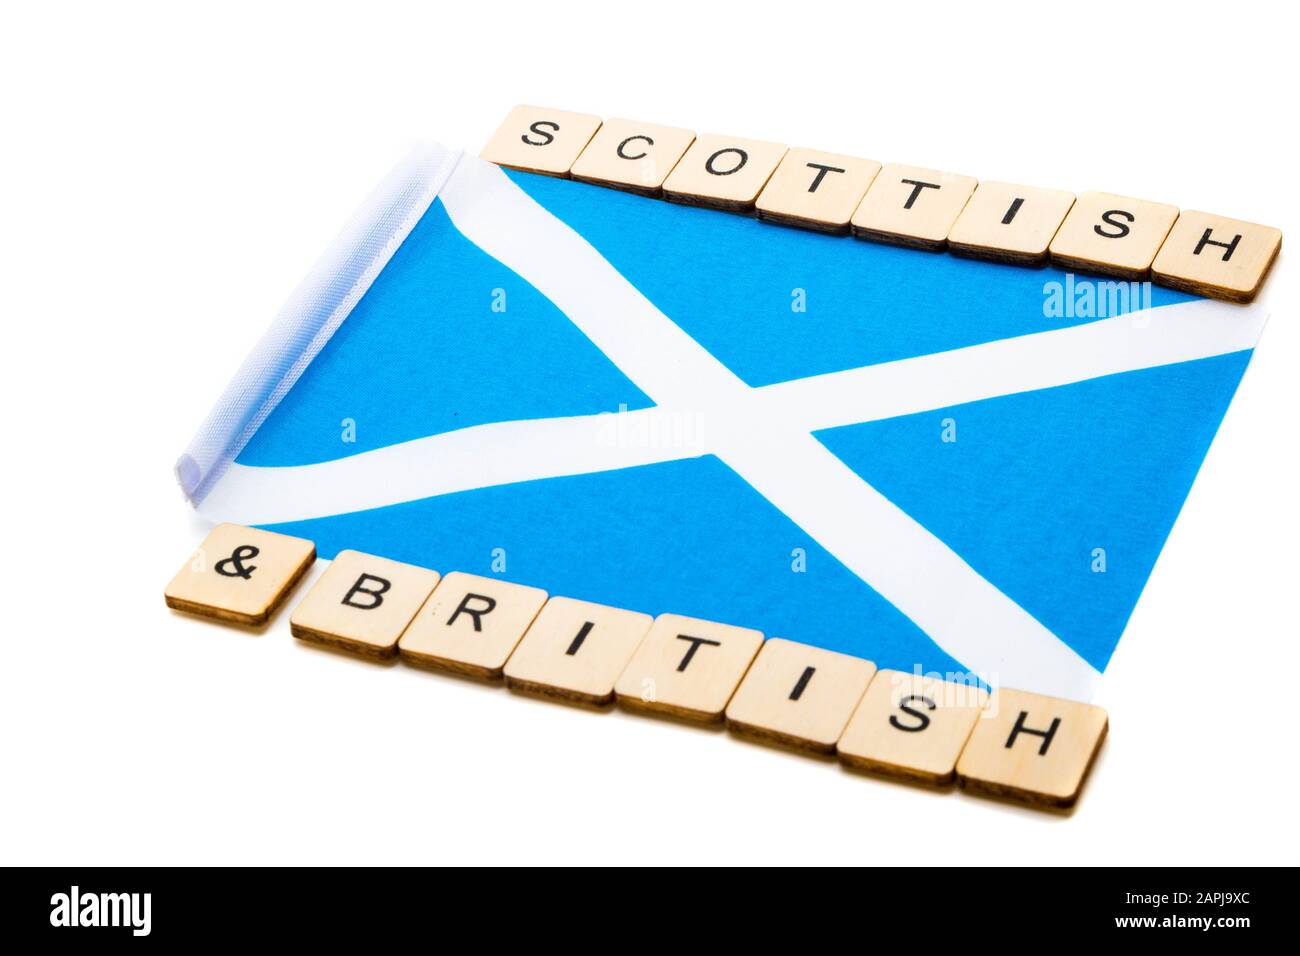 Die Nationalflaggen Schottlands, der Saltaire oder das Kreuz von St Andrews auf weißem Hintergrund mit einem Schild, das schottisch-britisch liest Stockfoto